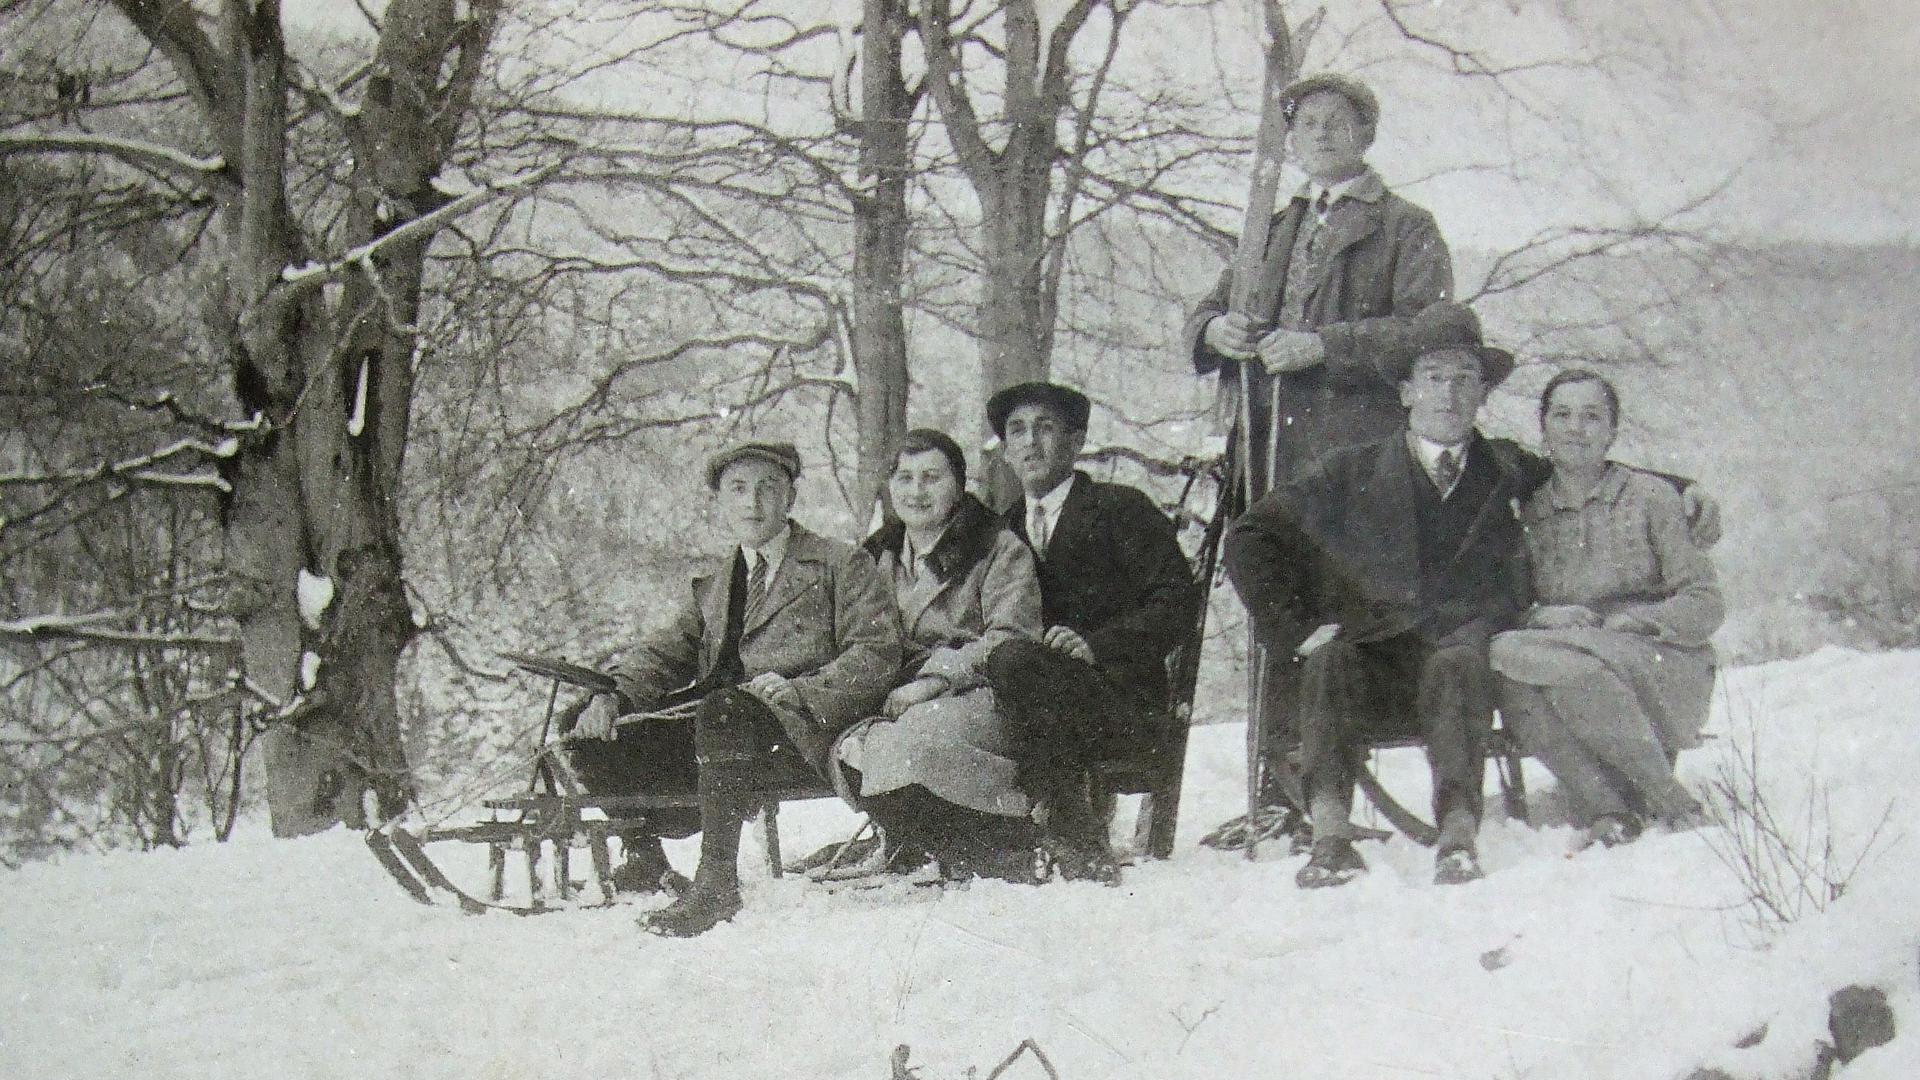 Historische Aufnahme von 1930: Zwei Schlitten mit zwei bzw. drei Personen und eine Person in der Mitte stehend mit Skiern auf einer Rodelstrecke auf dem Buchholzweg